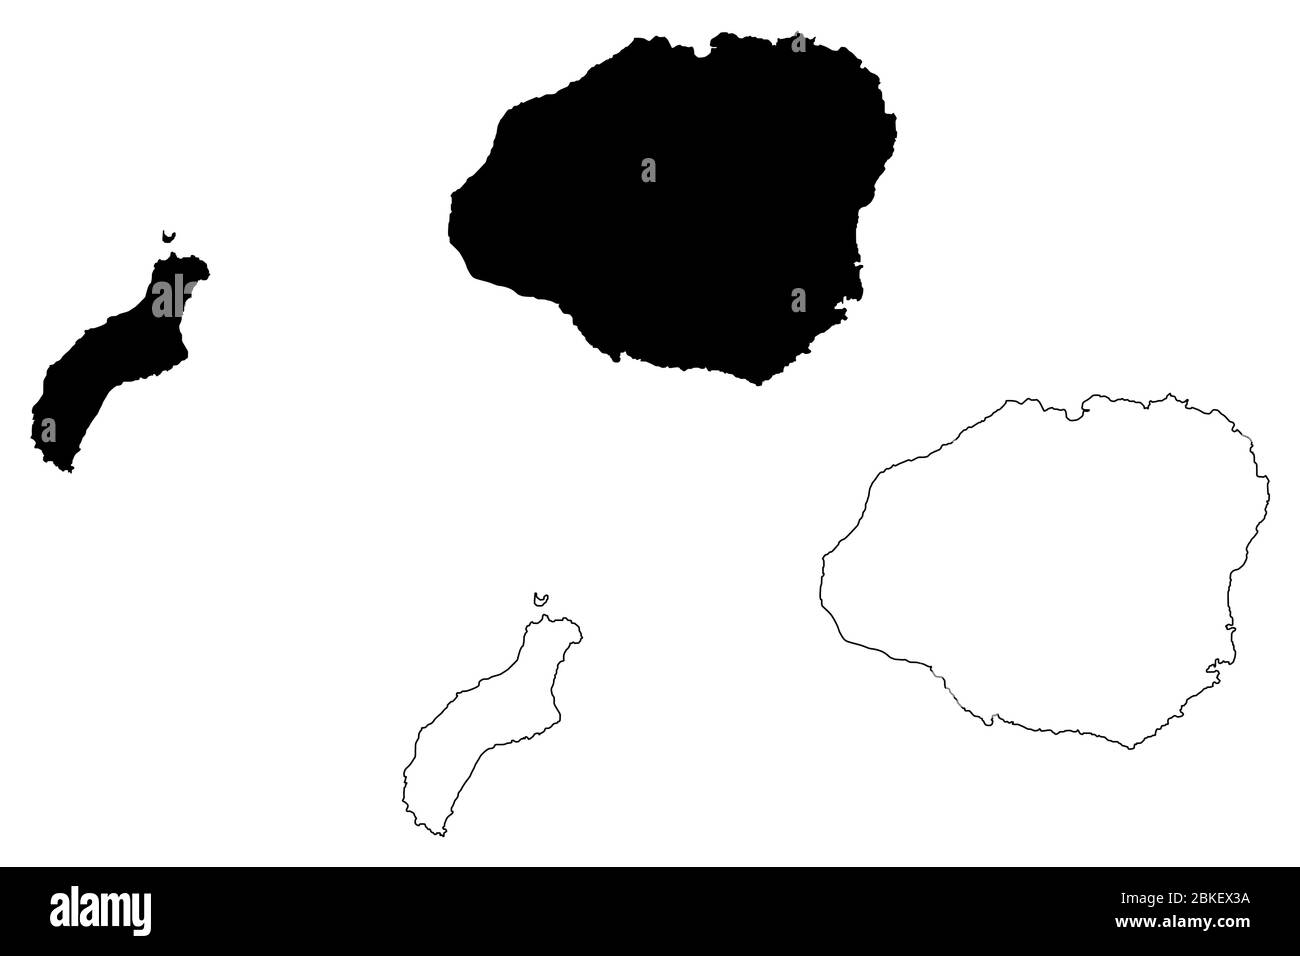 Kauai County, Hawaï (comté des États-Unis, États-Unis d'Amérique, États-Unis, États-Unis, archipel) illustration vectorielle de carte, croquis de gribble Kauai, Niihau et le Illustration de Vecteur